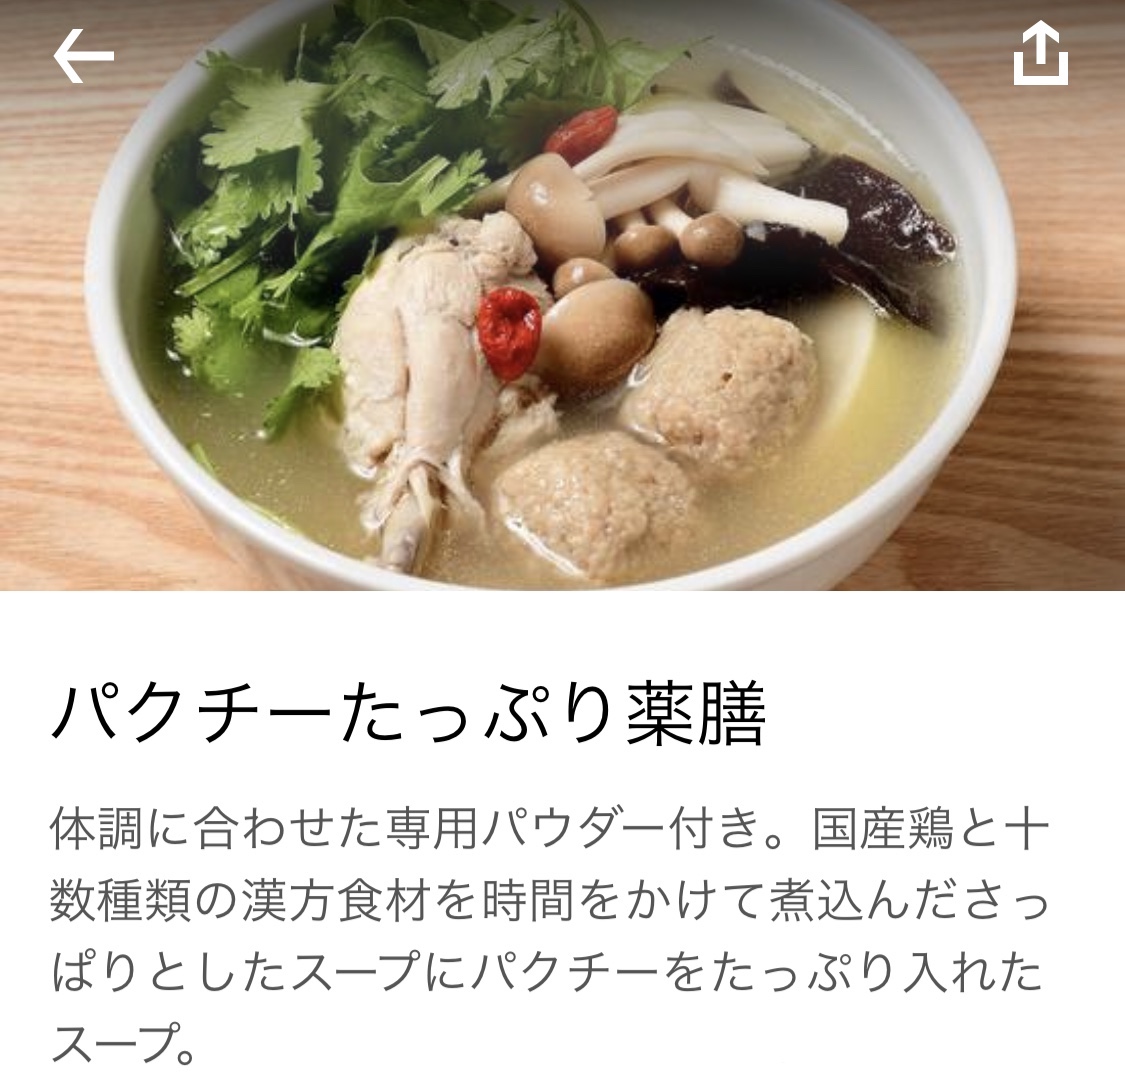 今回は、〈薬膳スープ専門店 薬膳日和〉の「パクチーたっぷり薬膳」を注文。